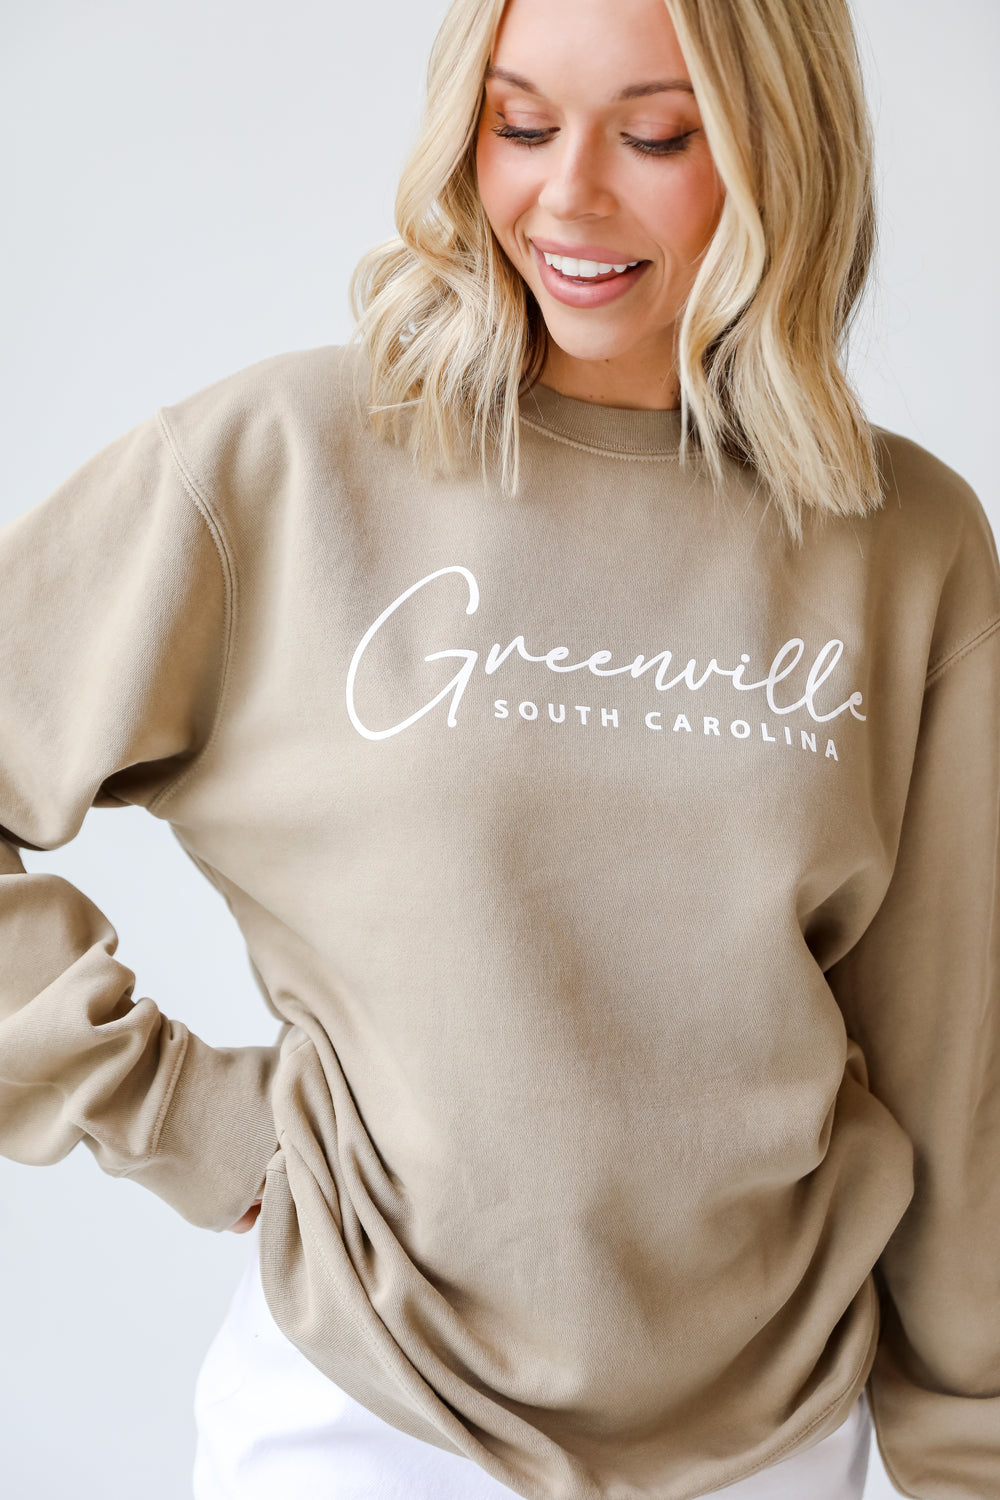 Tan Greenville South Carolina Pullover on model